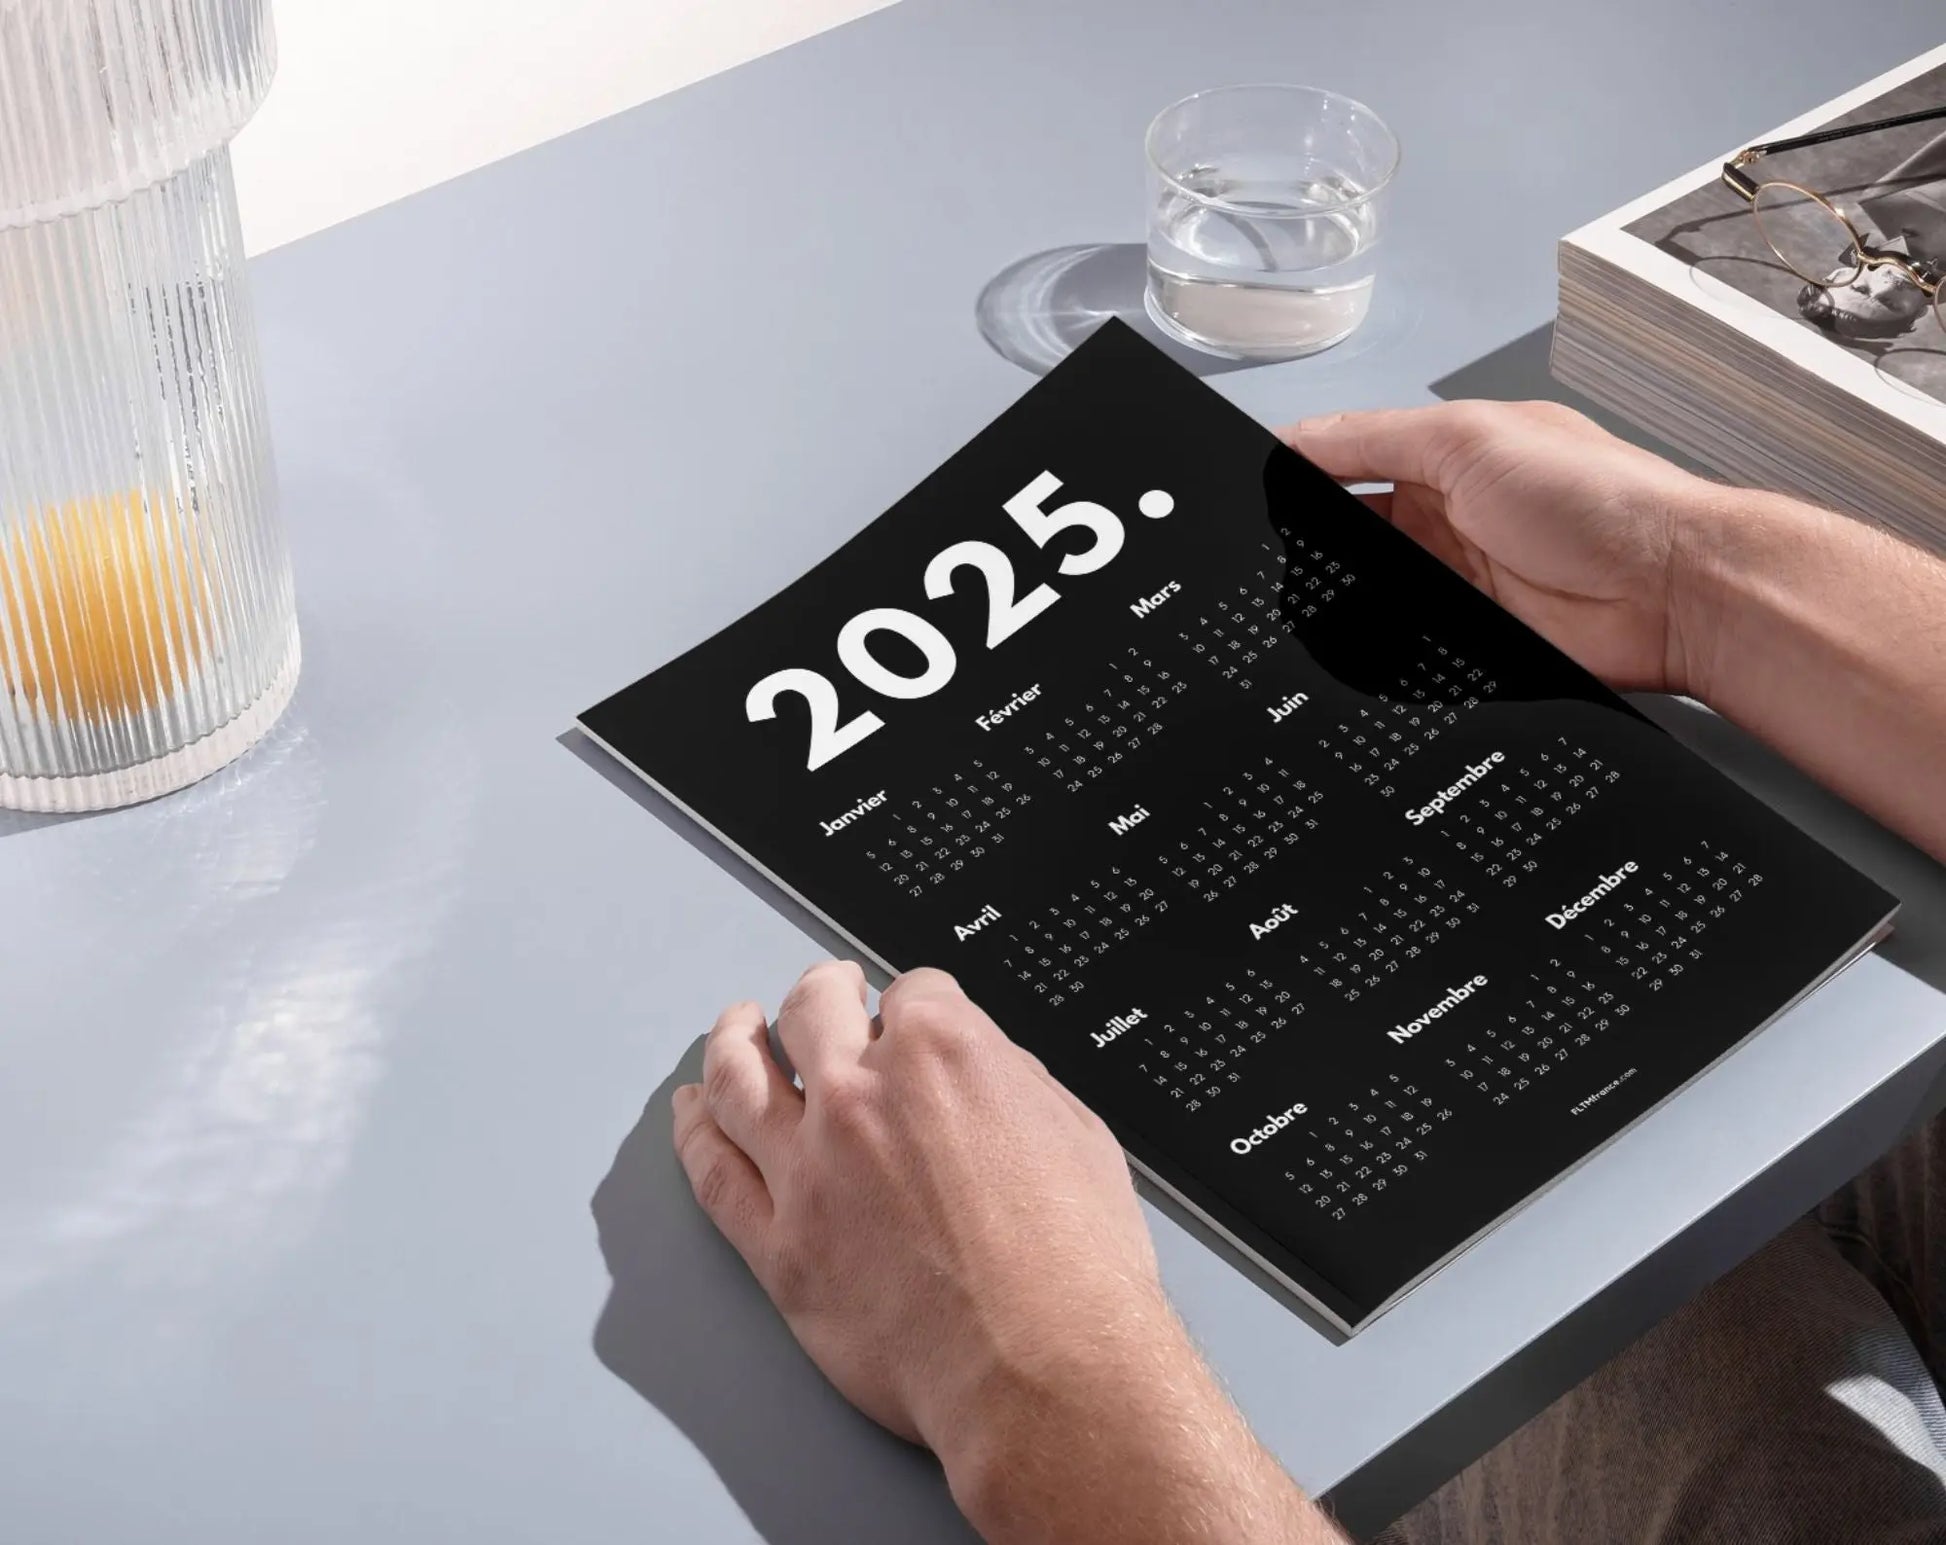 Calendrier 2025 minimaliste noir à imprimer FLTMfrance